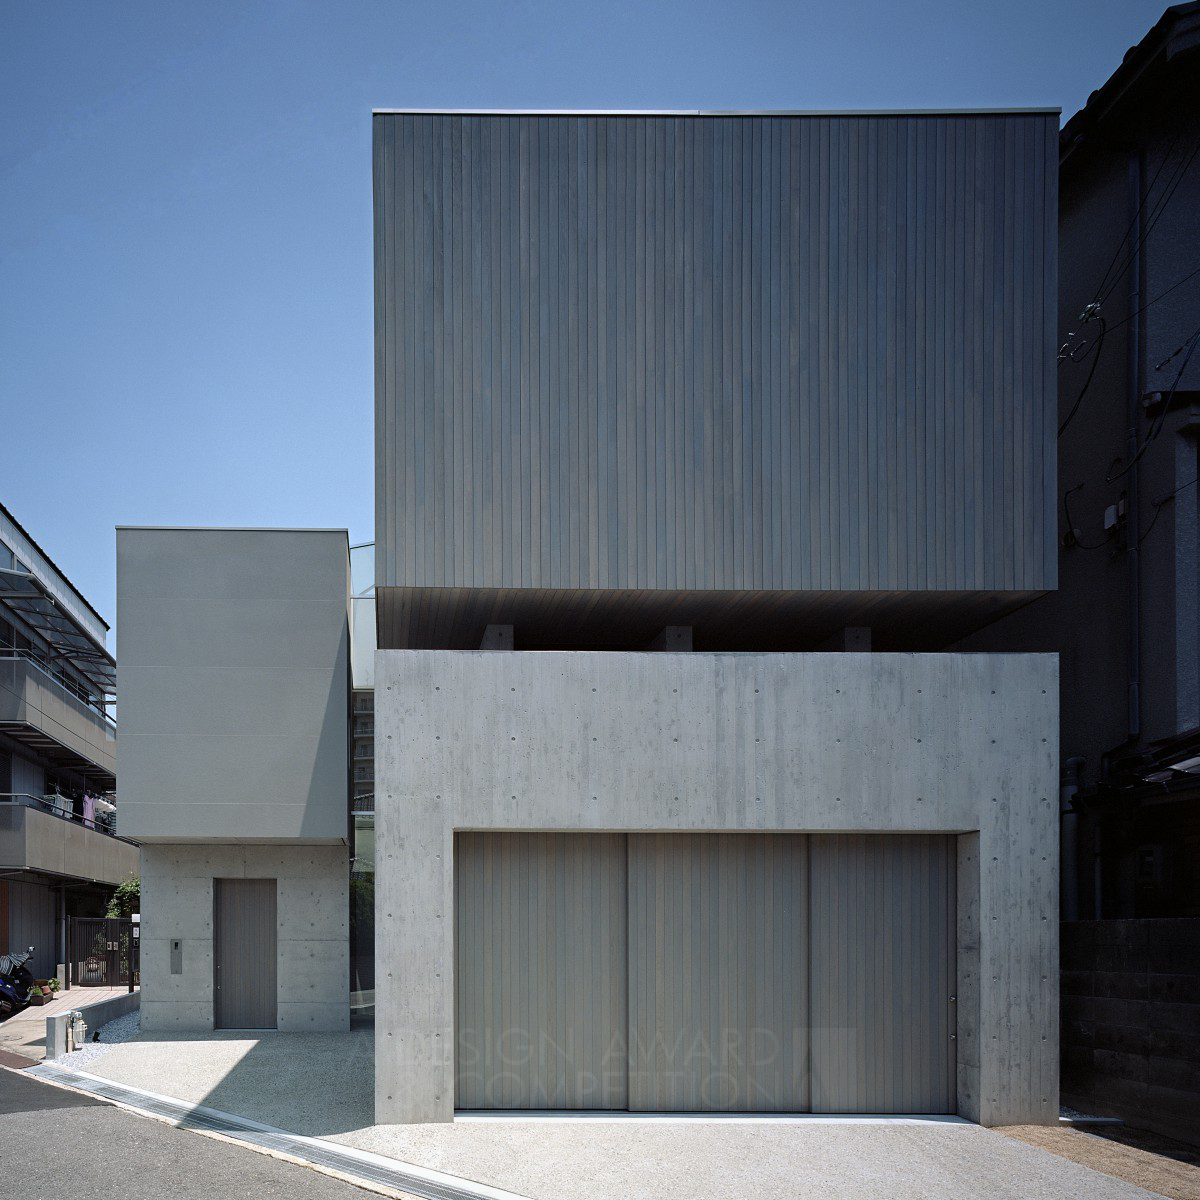 Shintaro Fujiwara Architecture